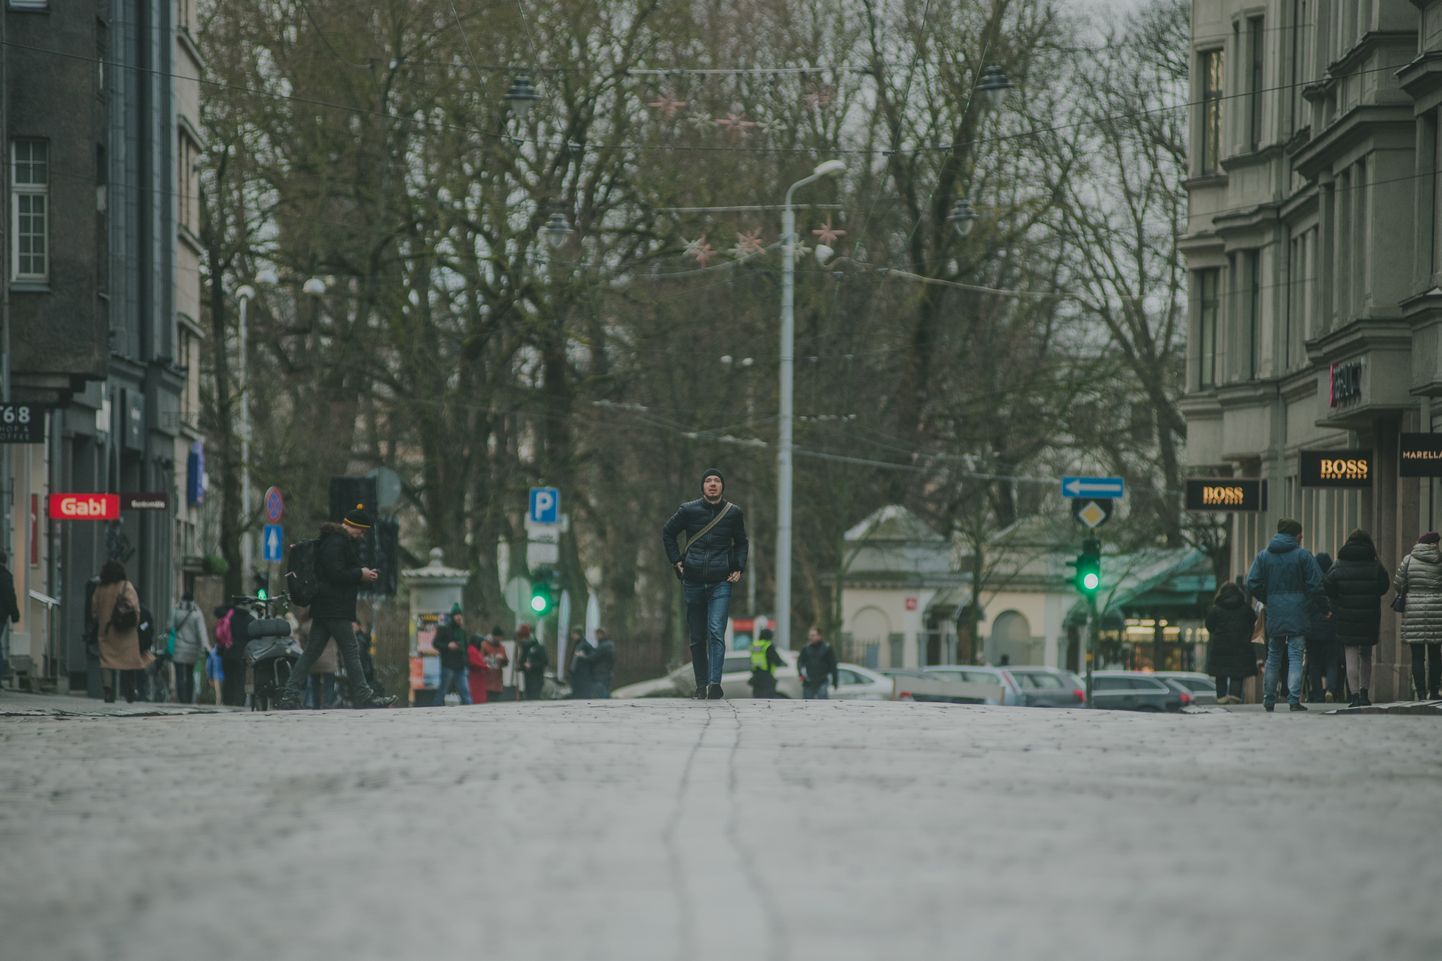 Foto: Tērbatas iela atvērta gājējiem un velobraucējiem